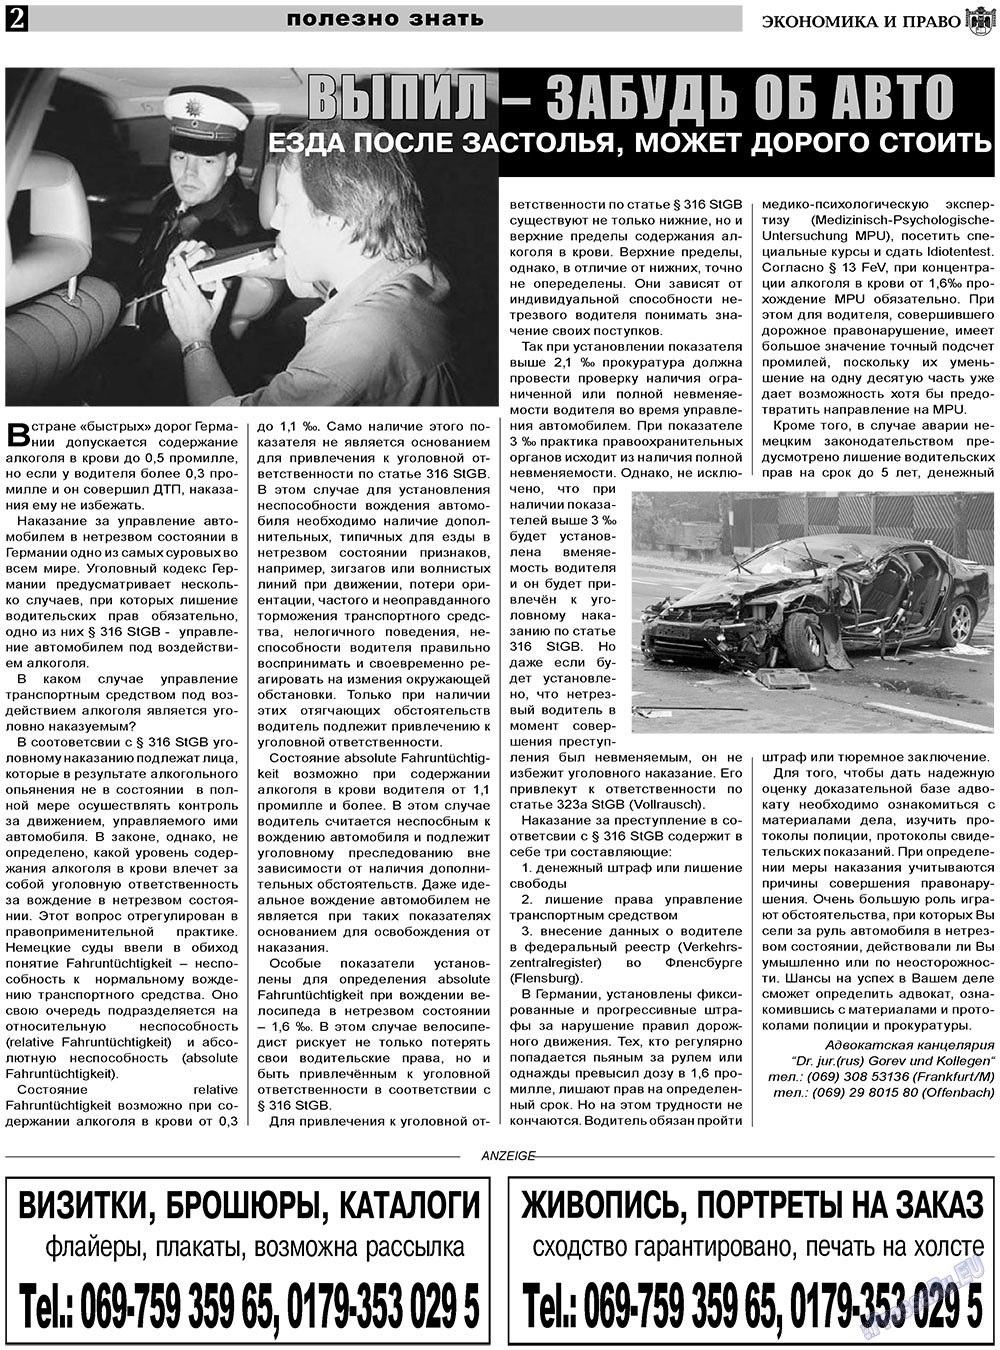 Экономика и право, газета. 2011 №1 стр.2